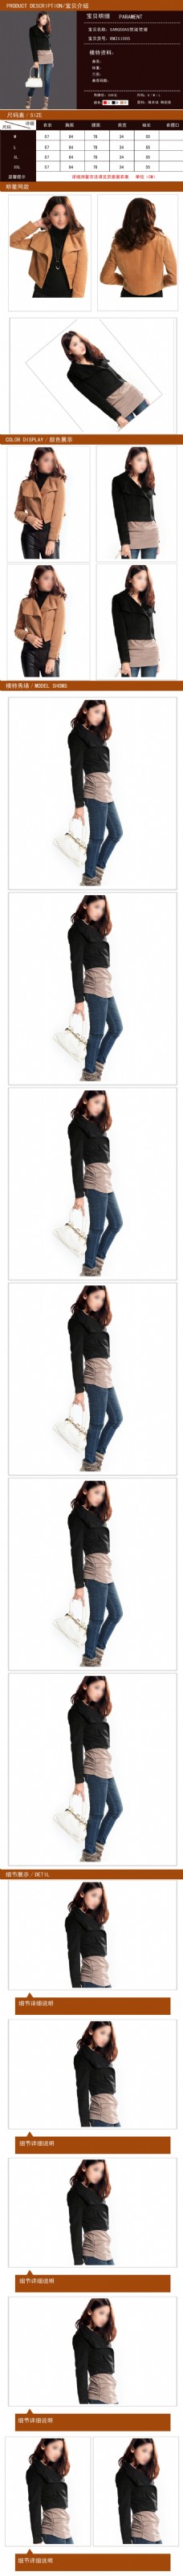 女装淘宝电商服装鞋业详情页展示设计